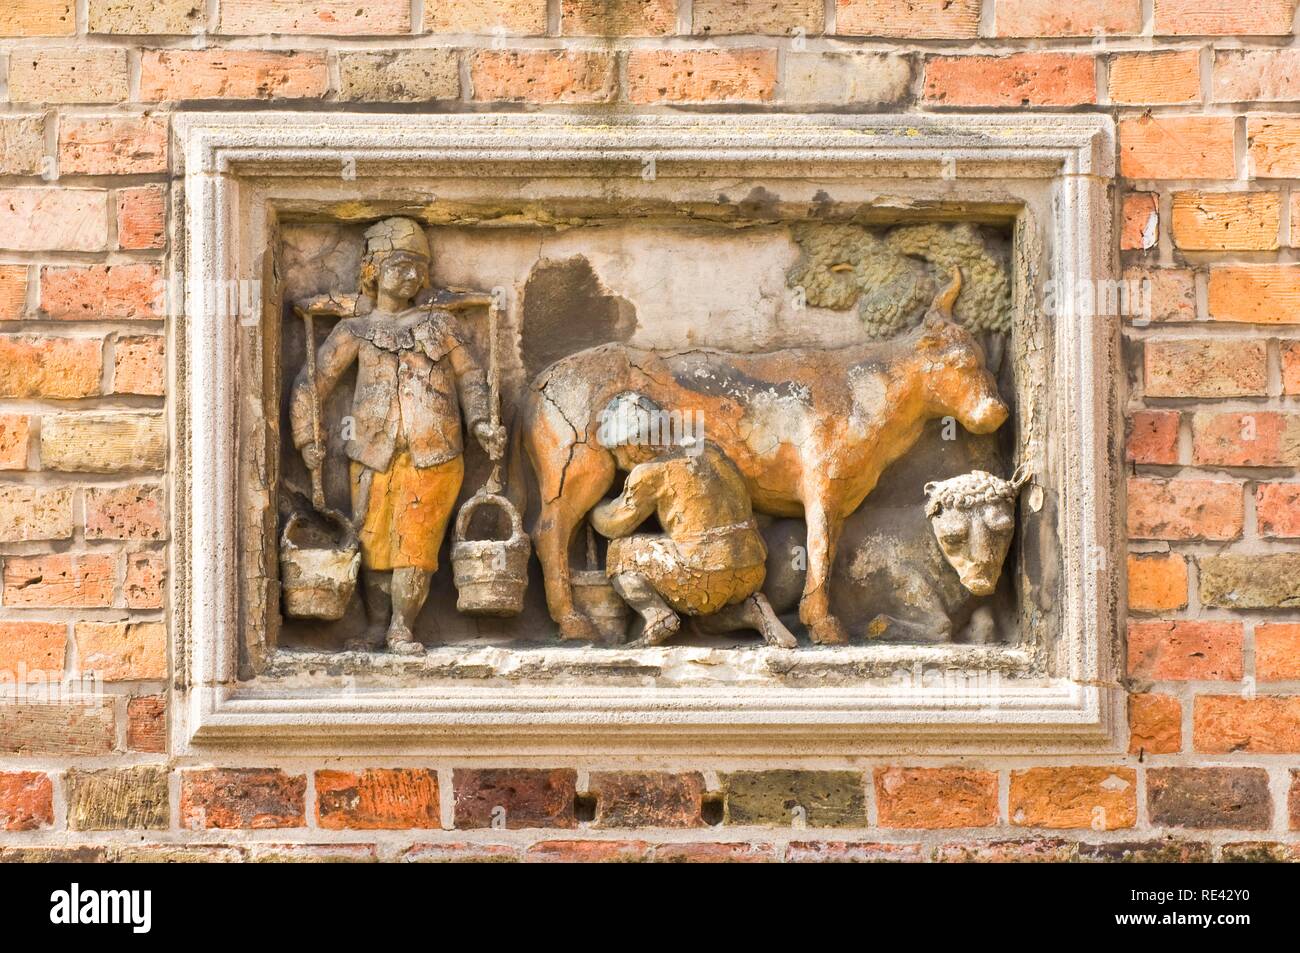 Bas-relief, la production de lait, Huidenvettersplein, centre historique de Bruges, site du patrimoine mondial de l'UNESCO, Belgique, Europe Banque D'Images